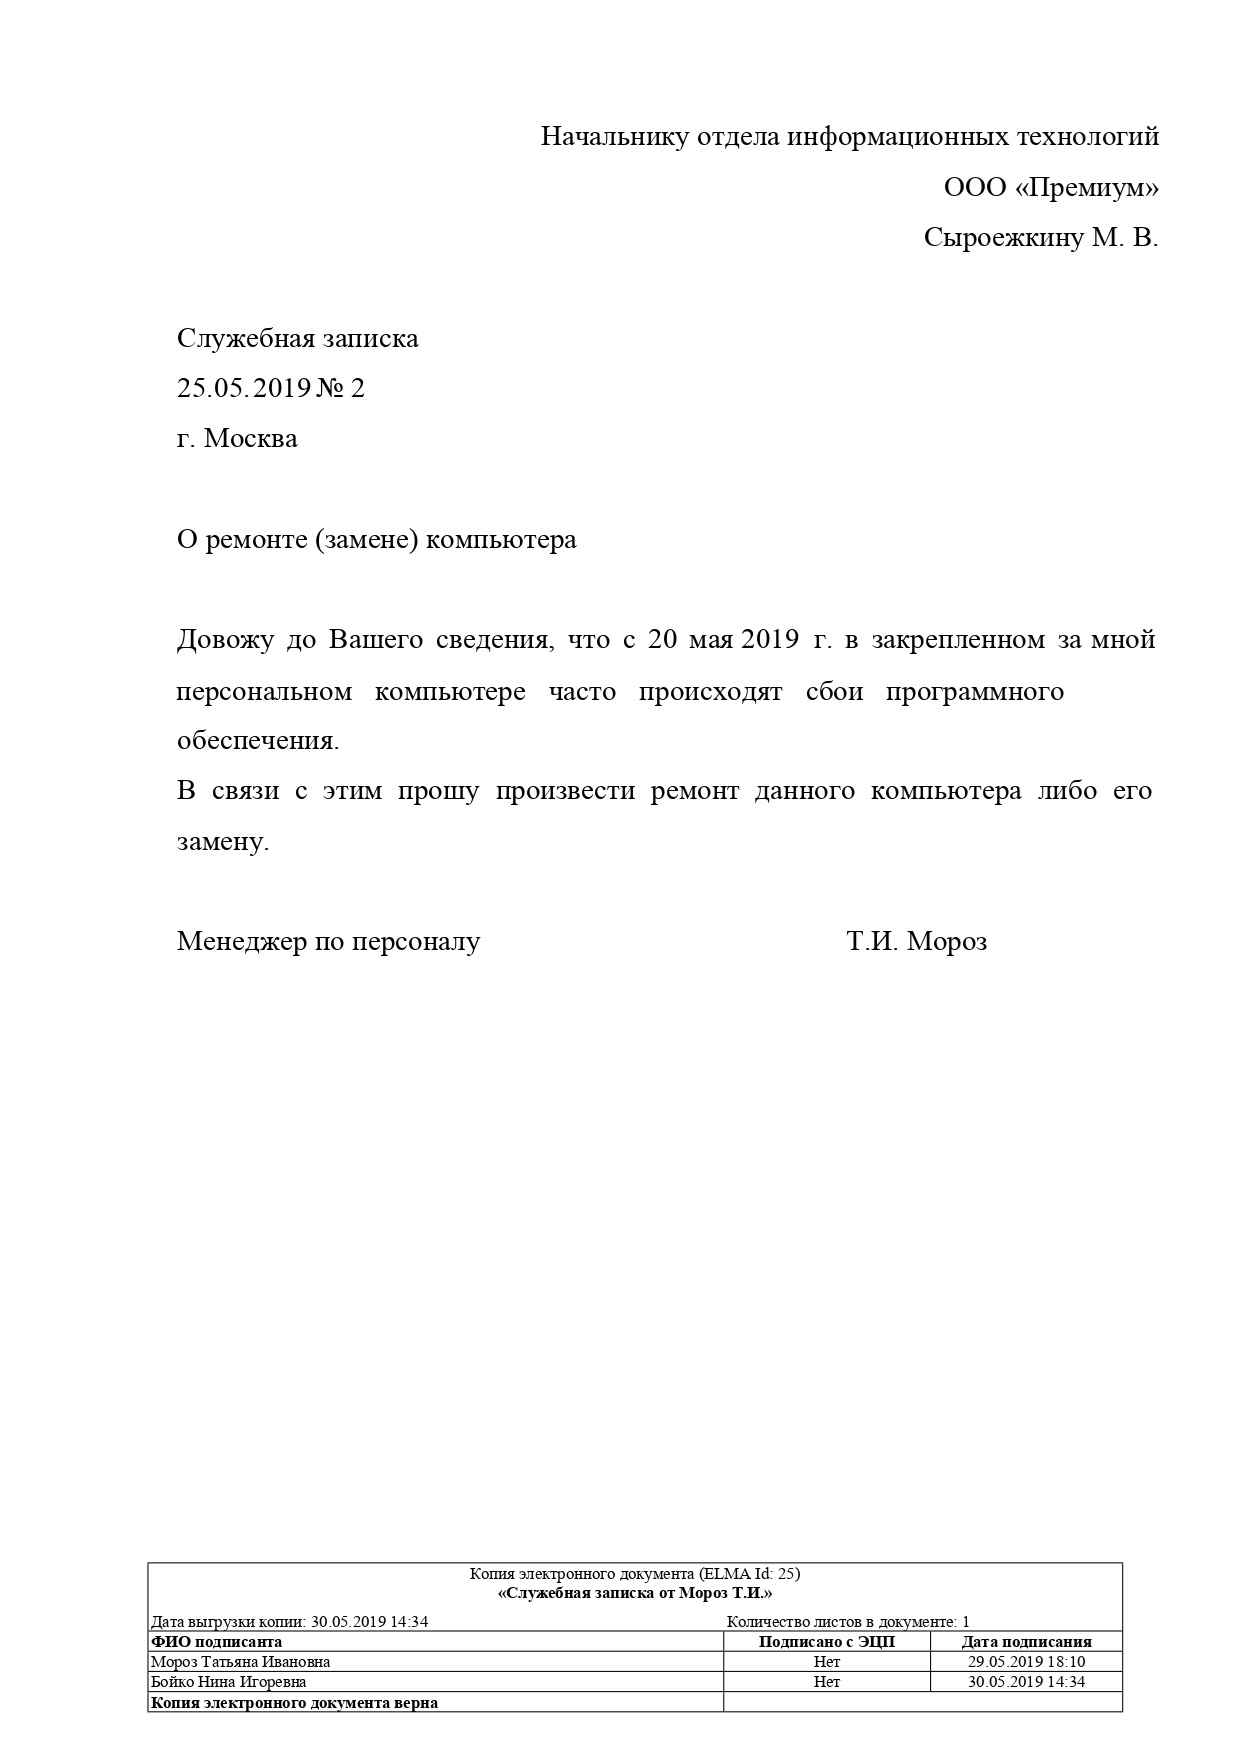 Пример документа формата .pdf со списком подписантов